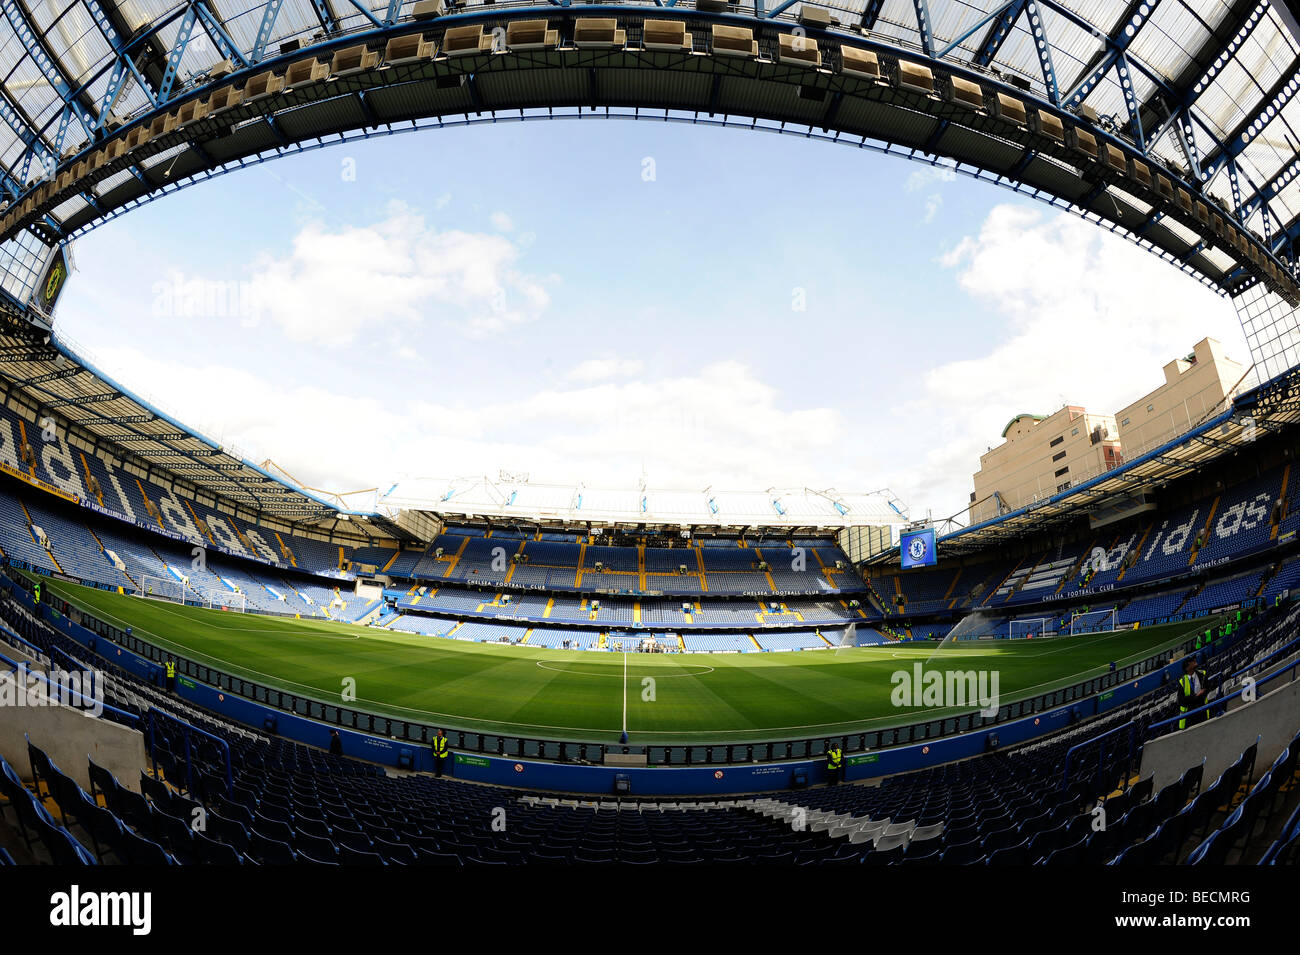 Vue à l'intérieur de stade de Stamford Bridge, Londres. Accueil de Chelsea Football Club Banque D'Images